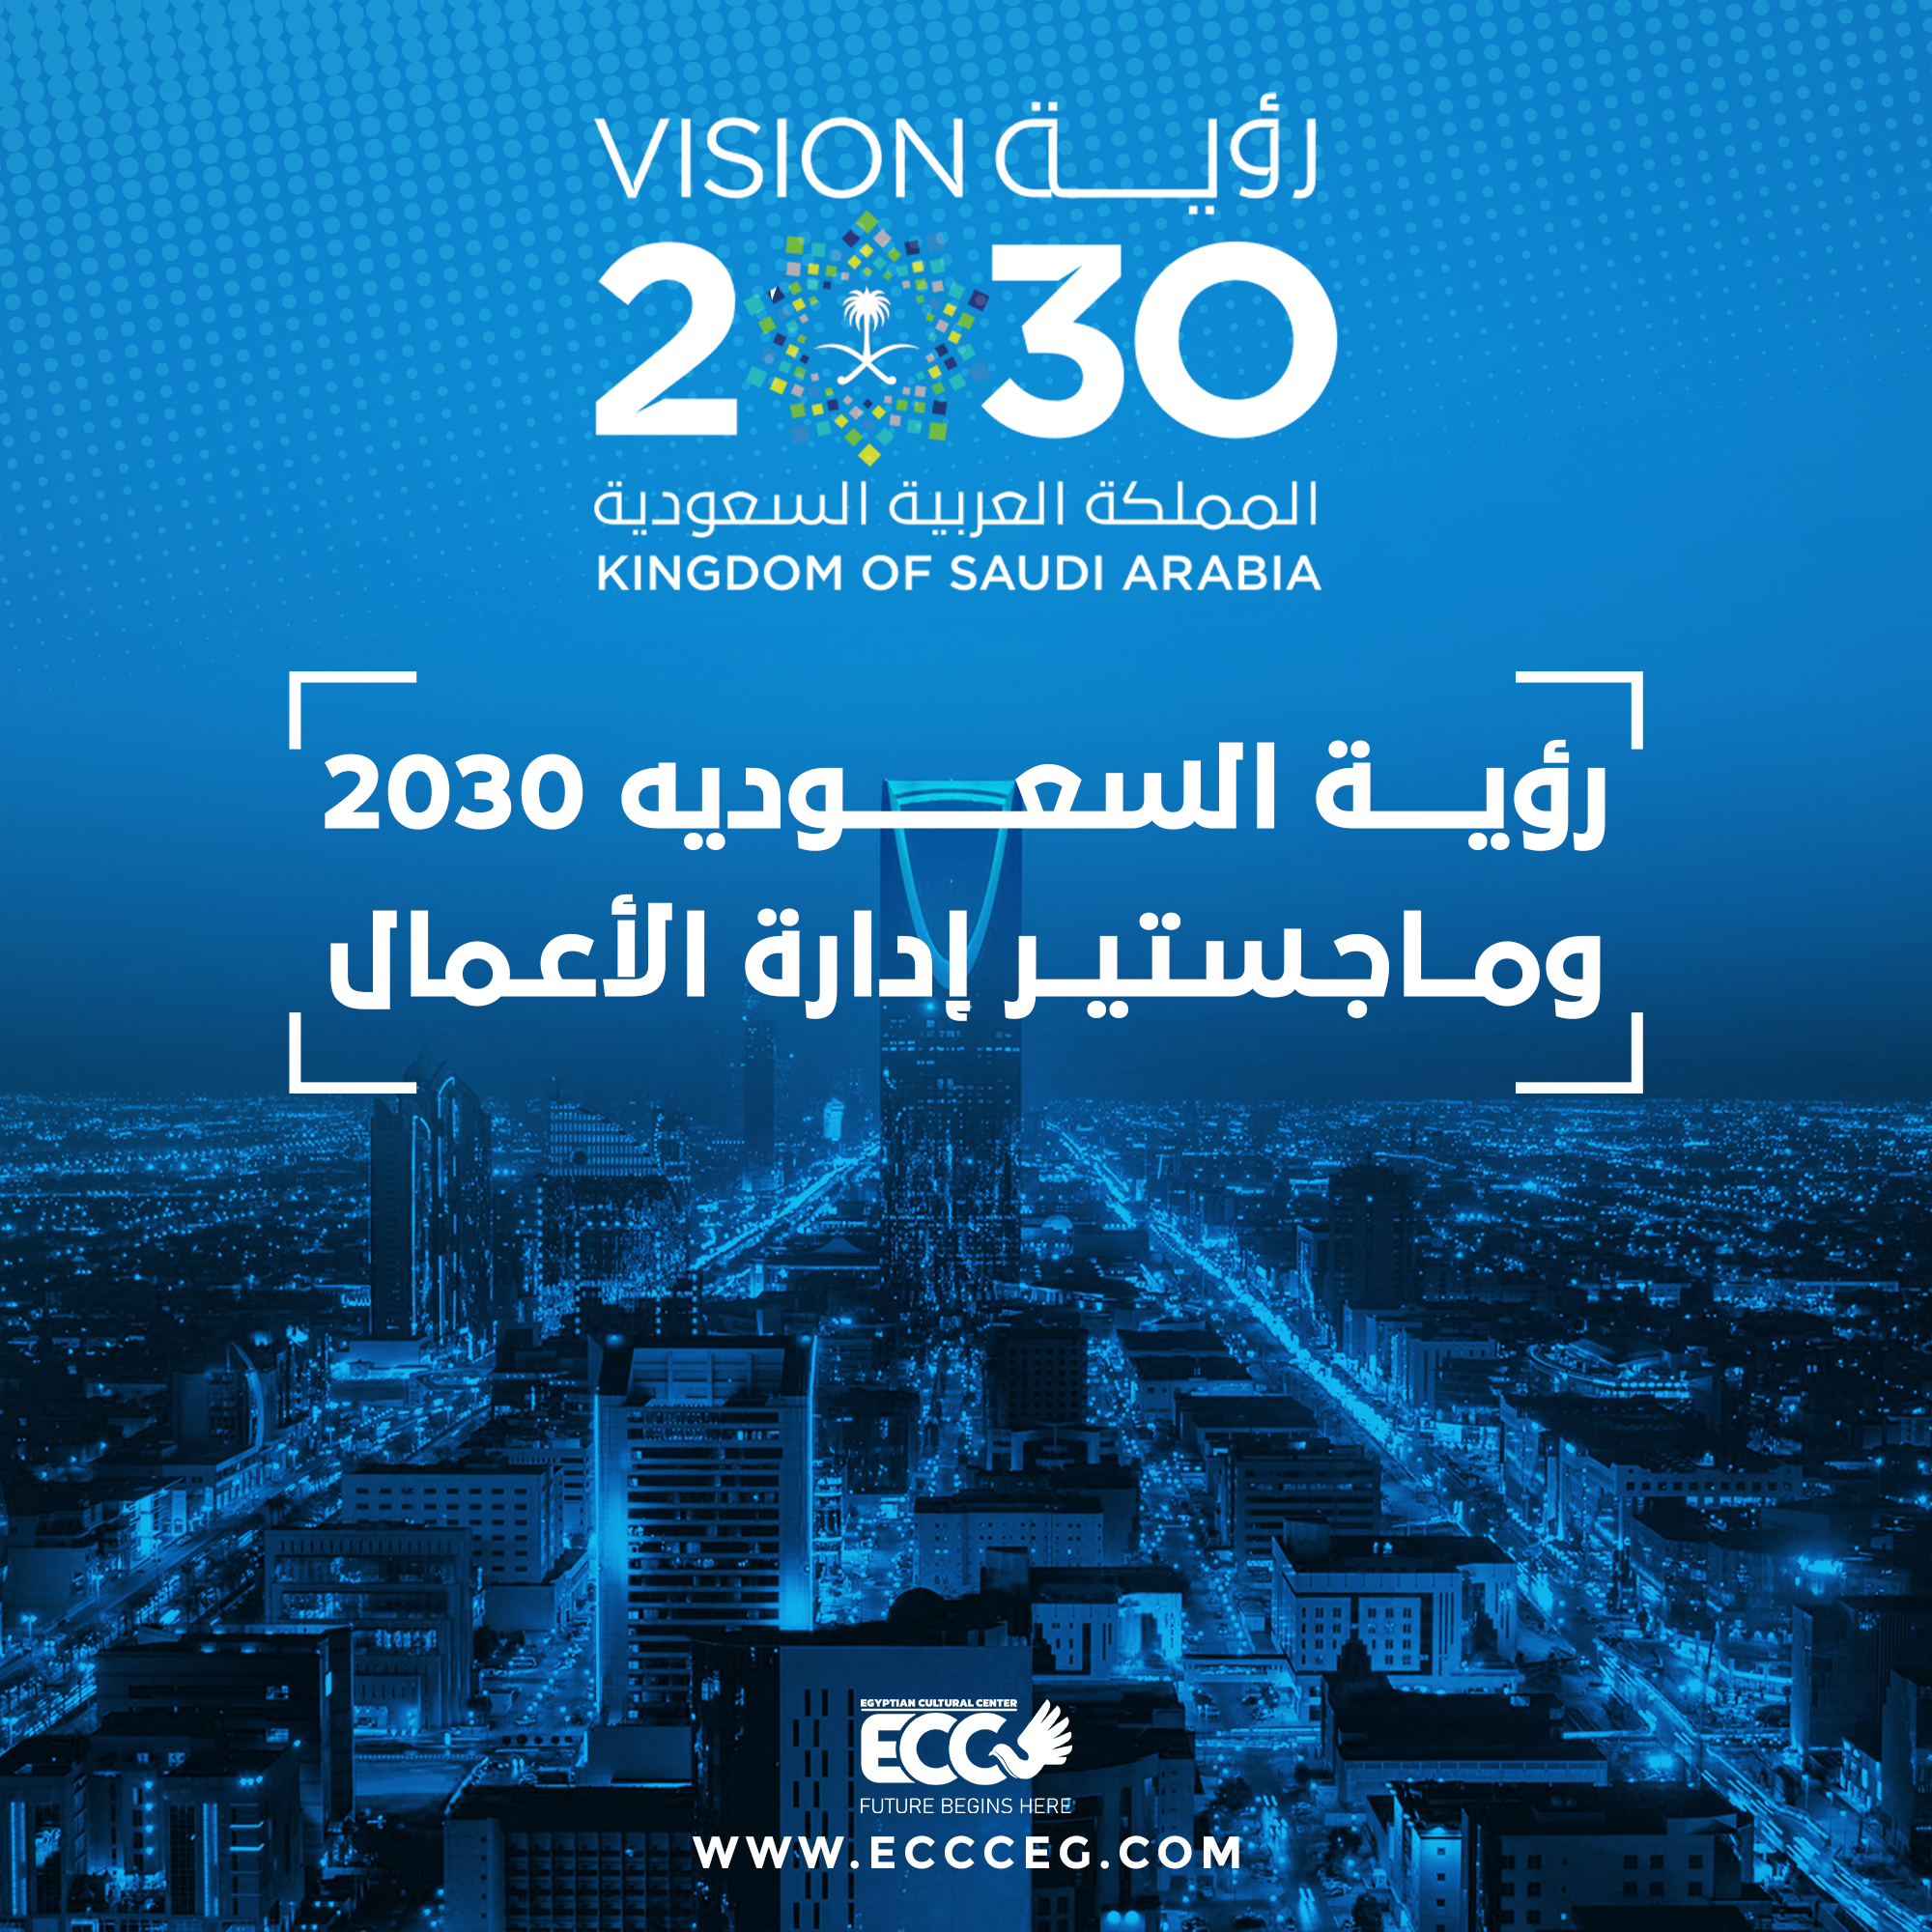 رؤية السعودية 2030 وماجستير إدارة الأعمال